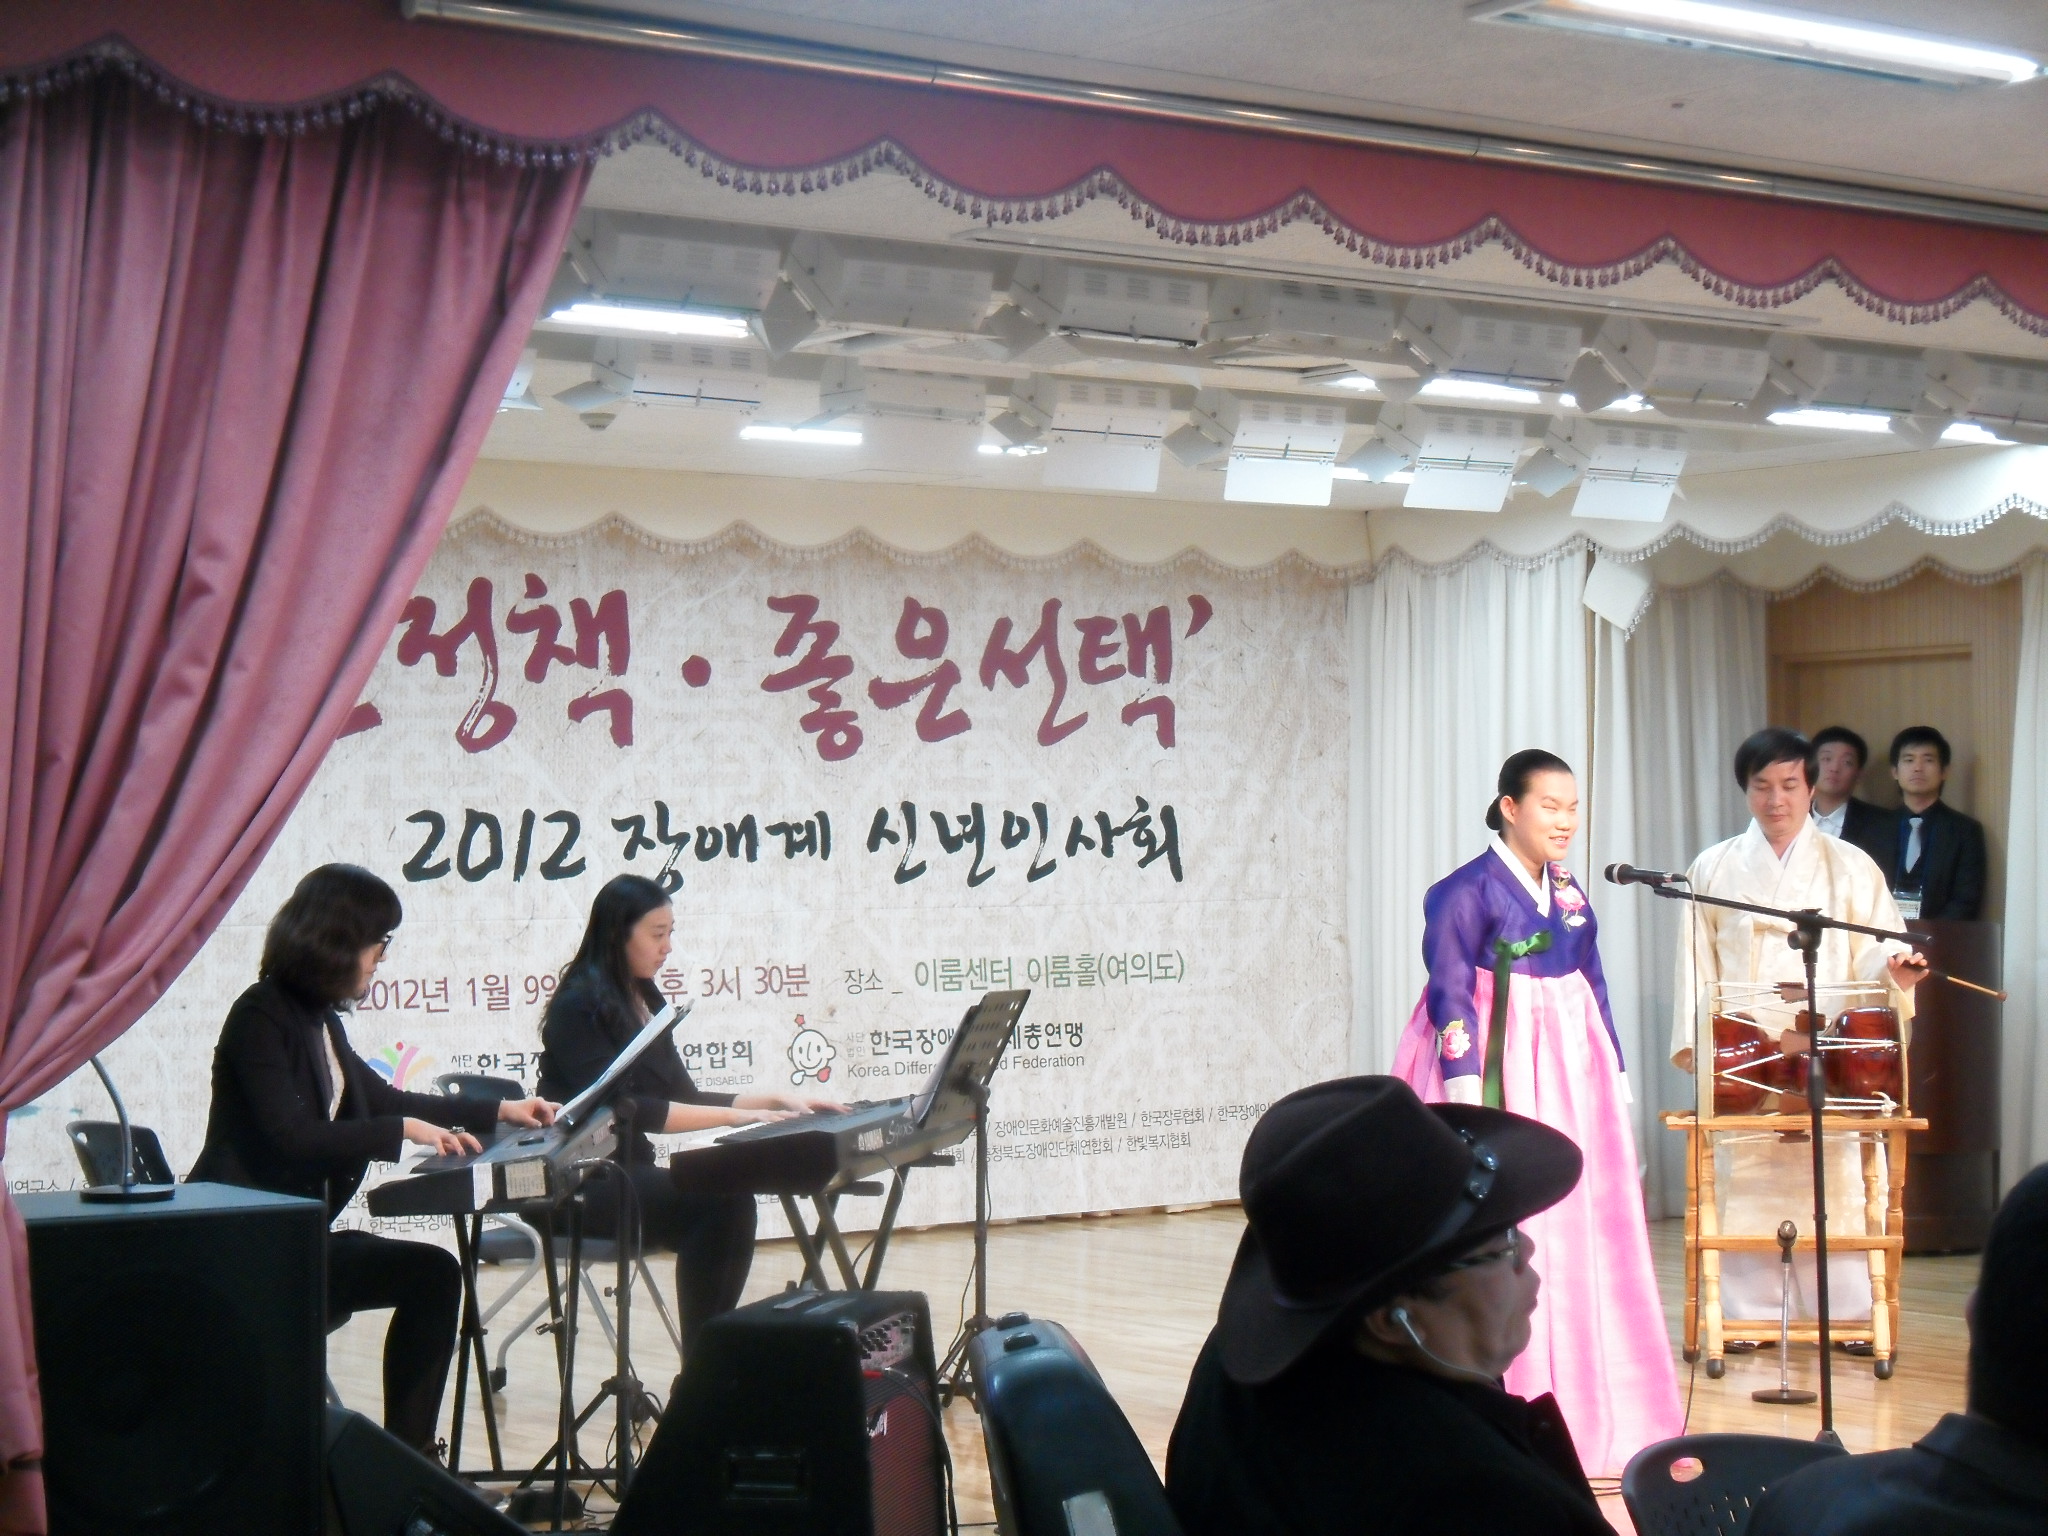 관현맹인예술단 공연(2012 장애계 신년인사회) 썸네일